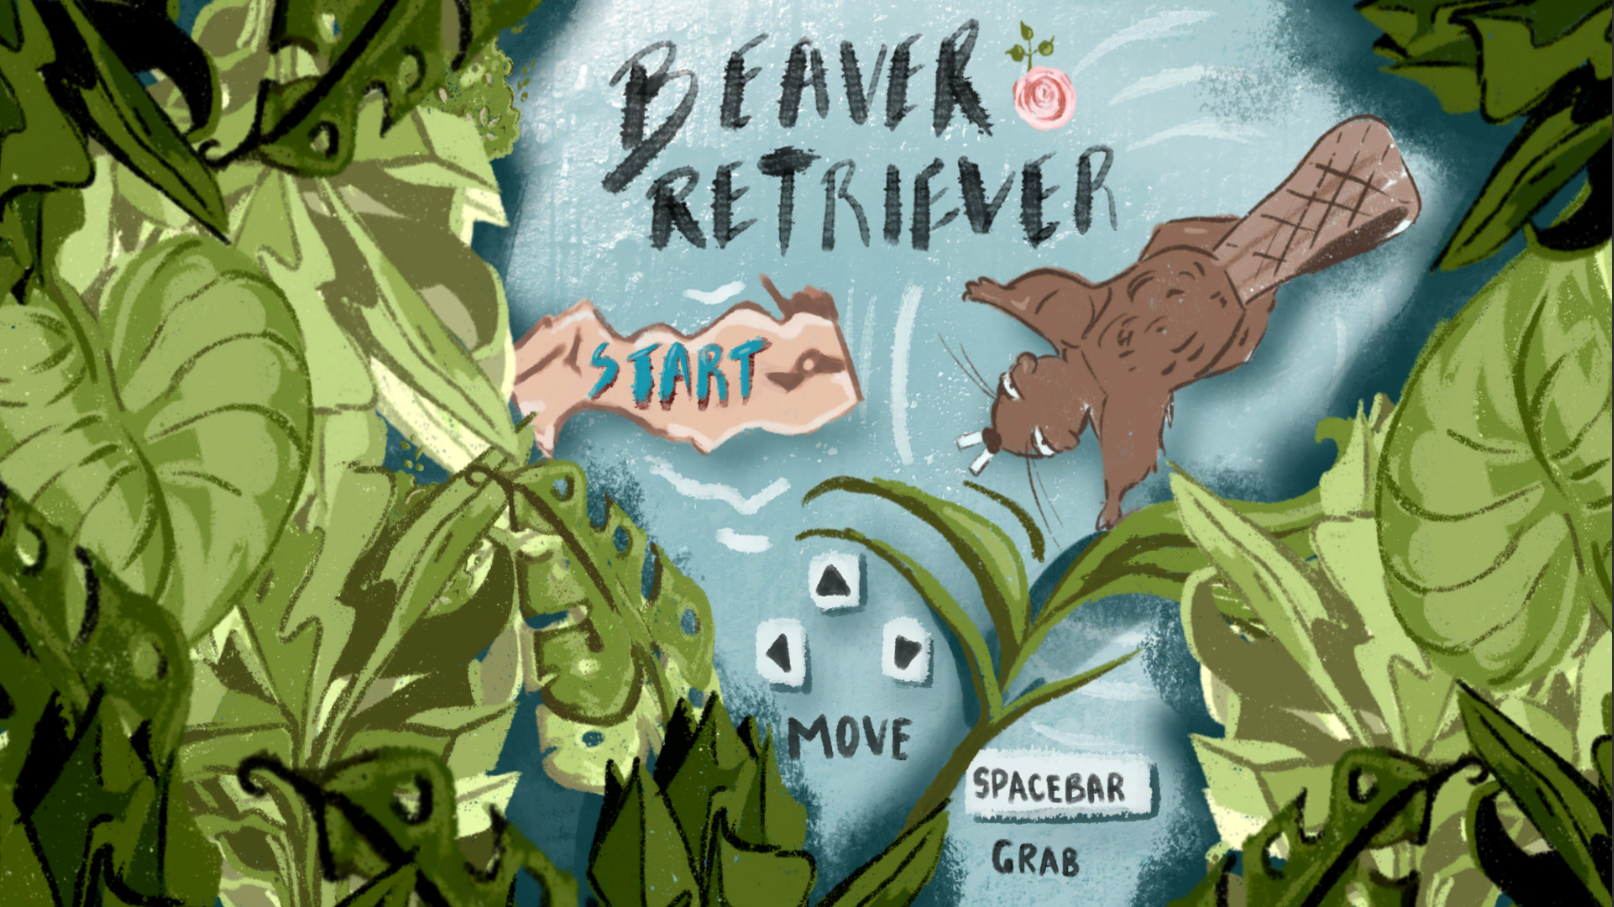 Beaver Retriever